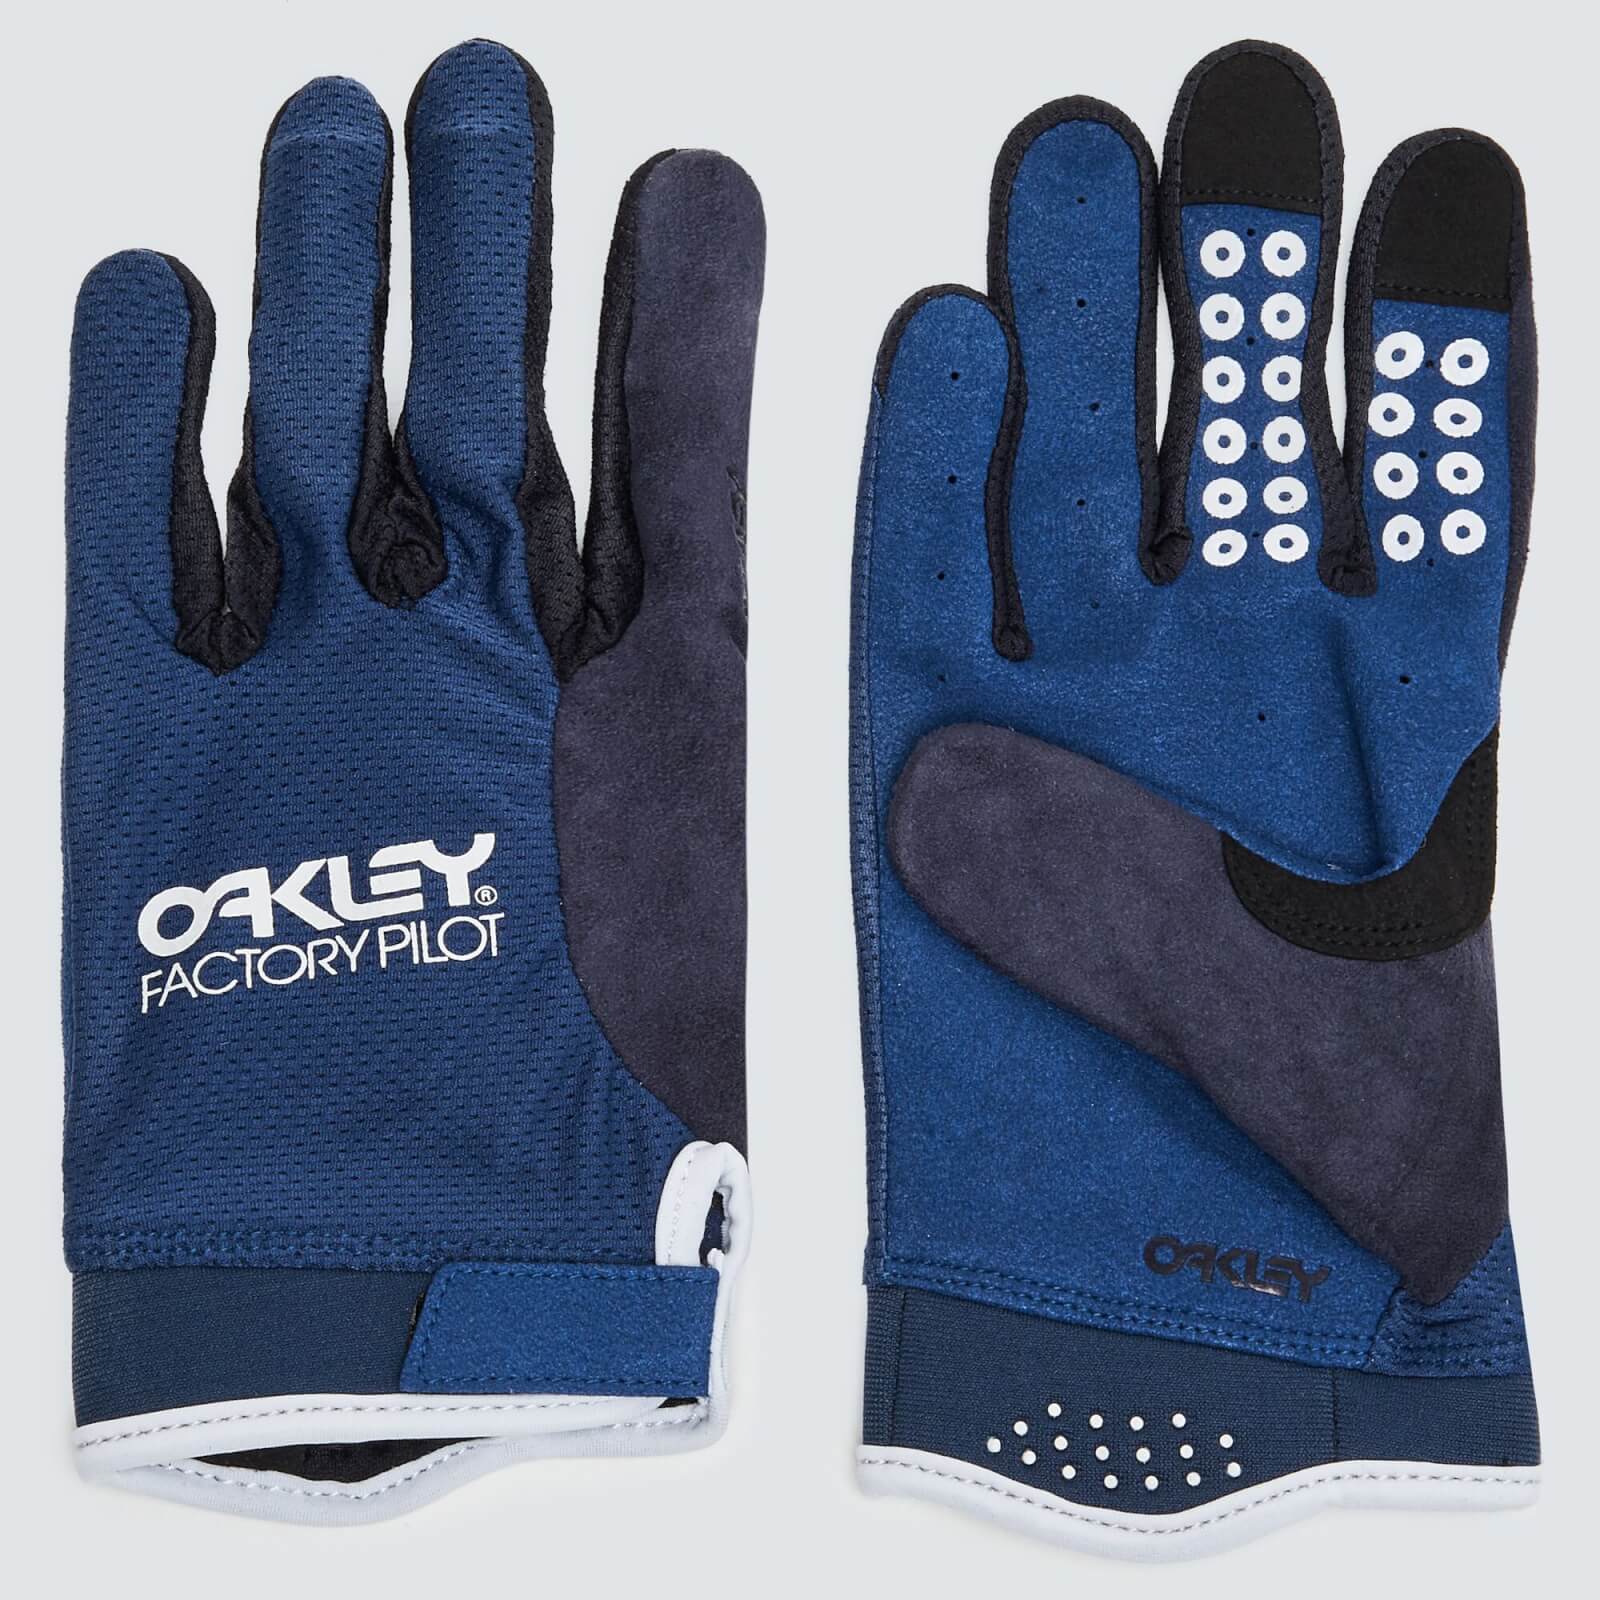 Oakley All Mountain MTB Glove - M - Poseidon